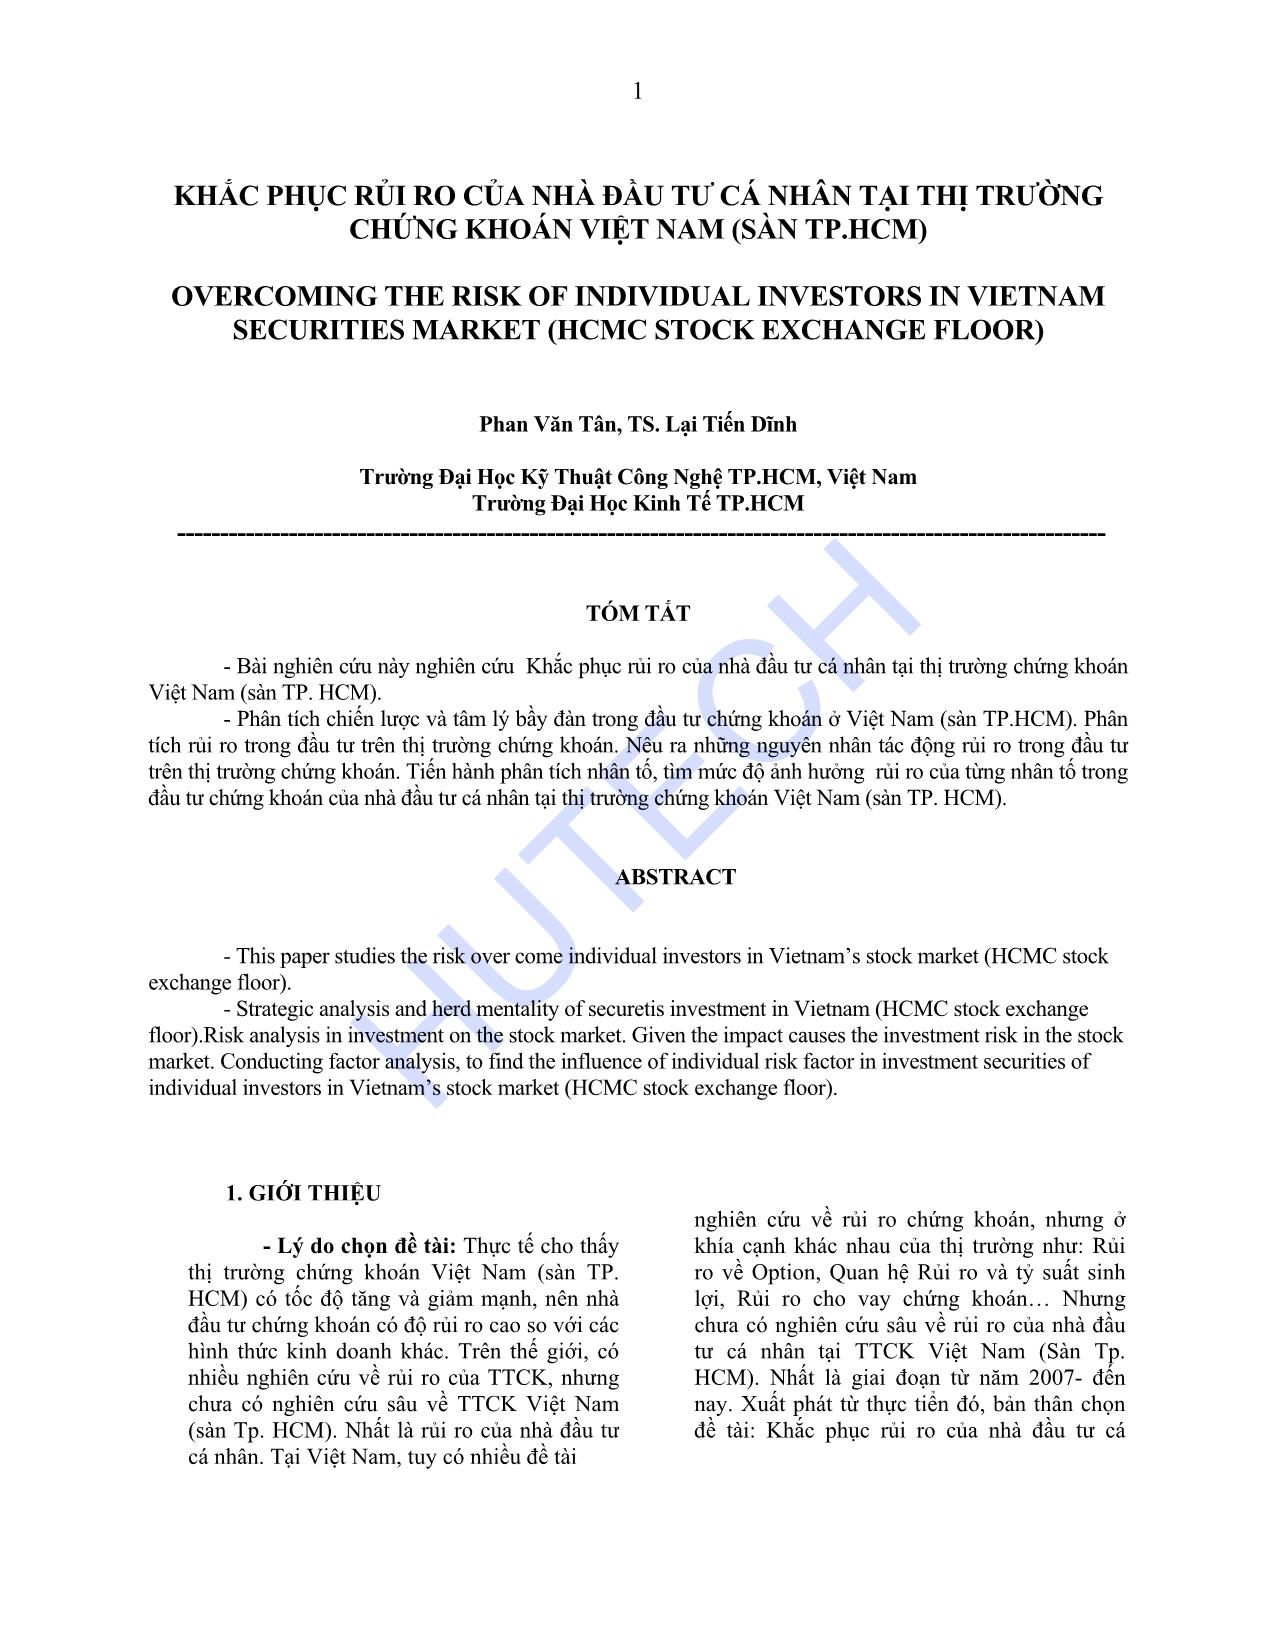 Khắc phục rủi ro của nhà đầu tư cá nhân tại thị trường chứng khoán Việt Nam (Sàn TP.HCM) trang 1